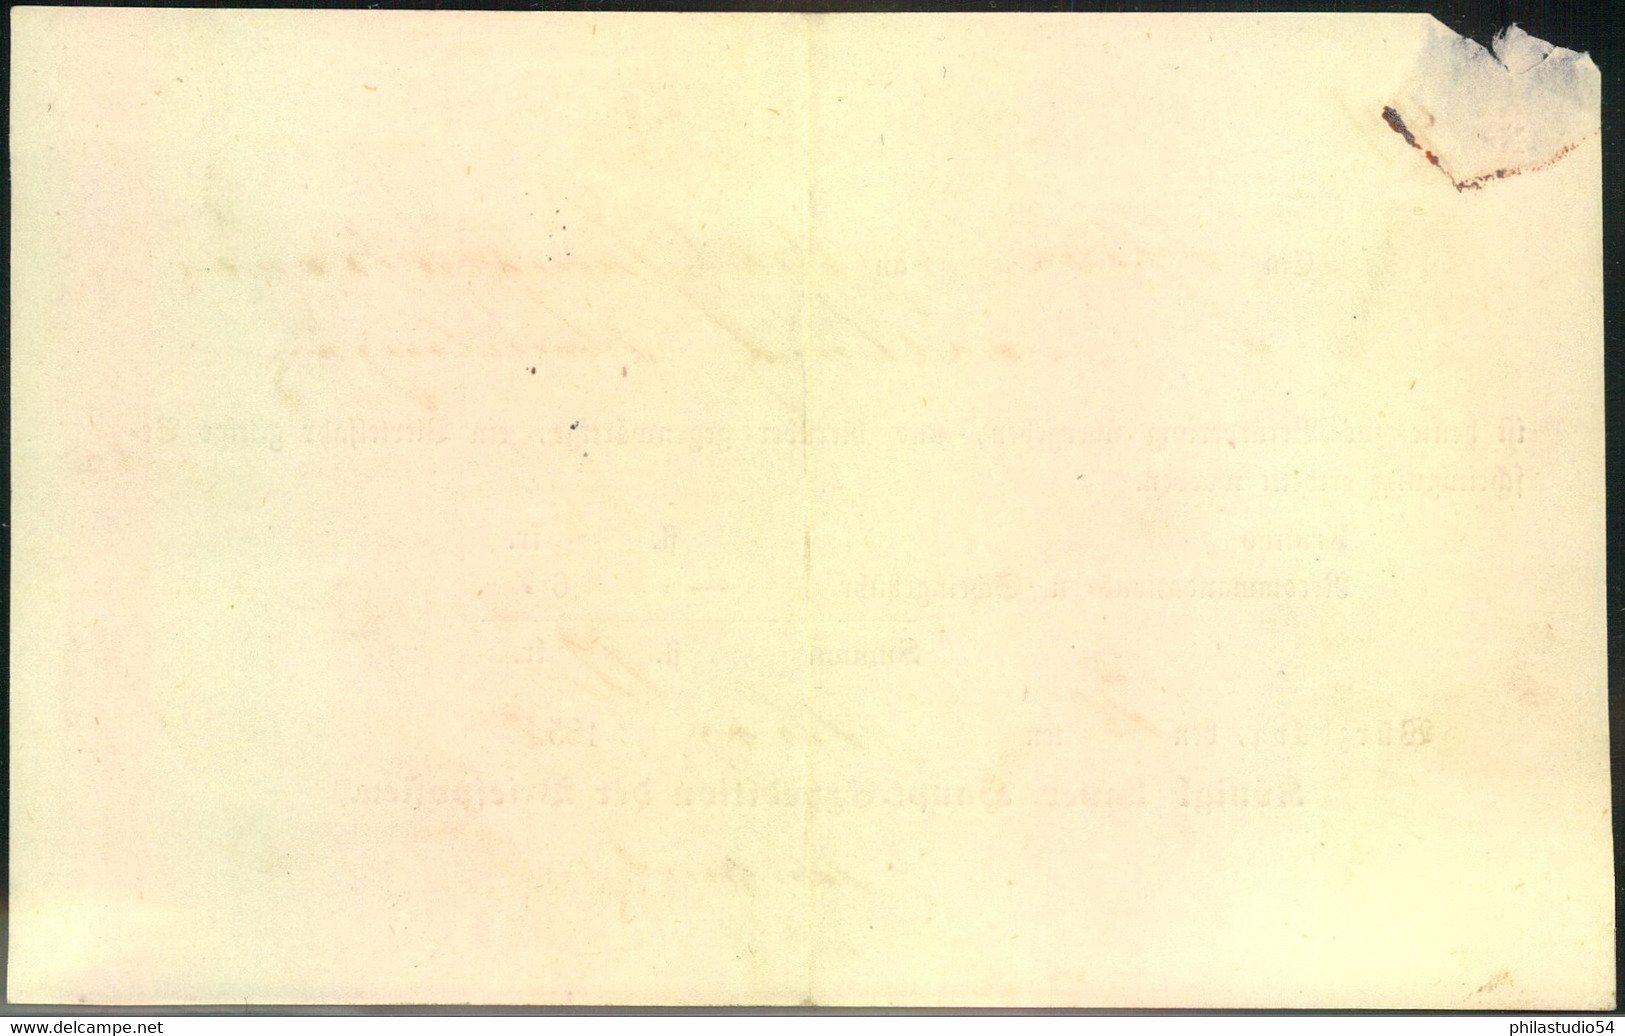 1852, Ortsdruck-Postschein Von Würzburg - Lettres & Documents